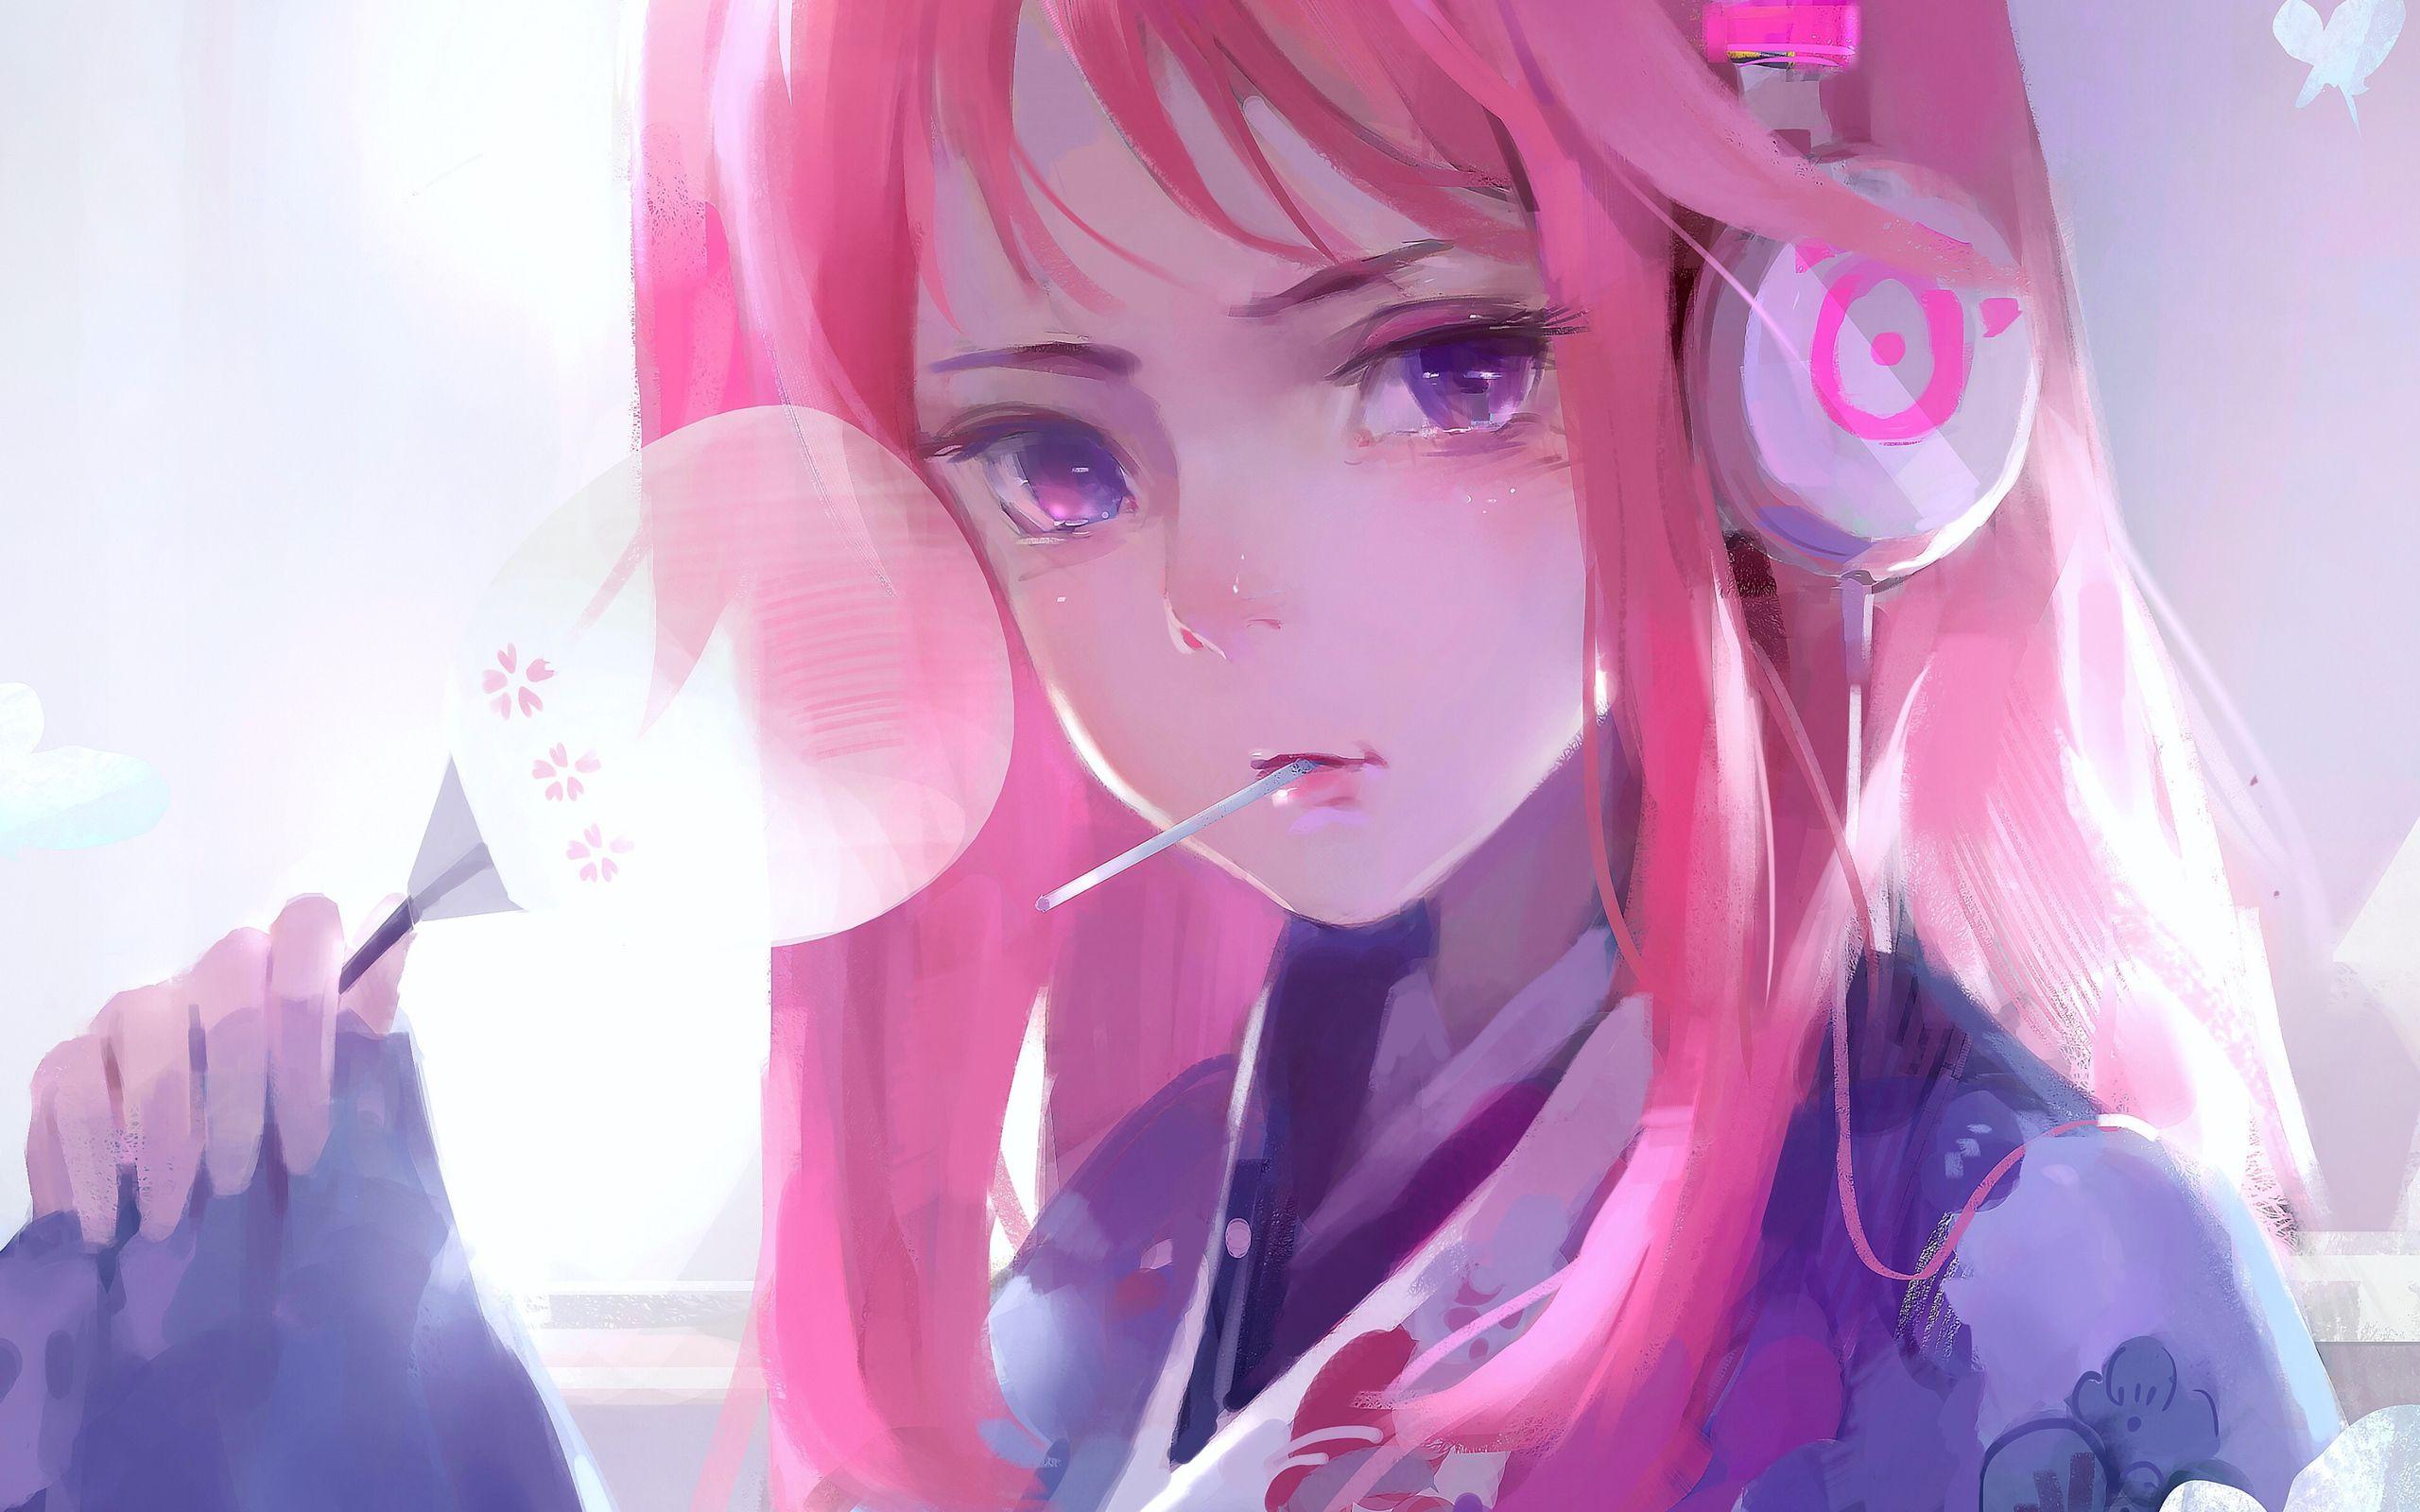 Anime Cute Pink Desktop Wallpapers - Top Free Anime Cute Pink Desktop